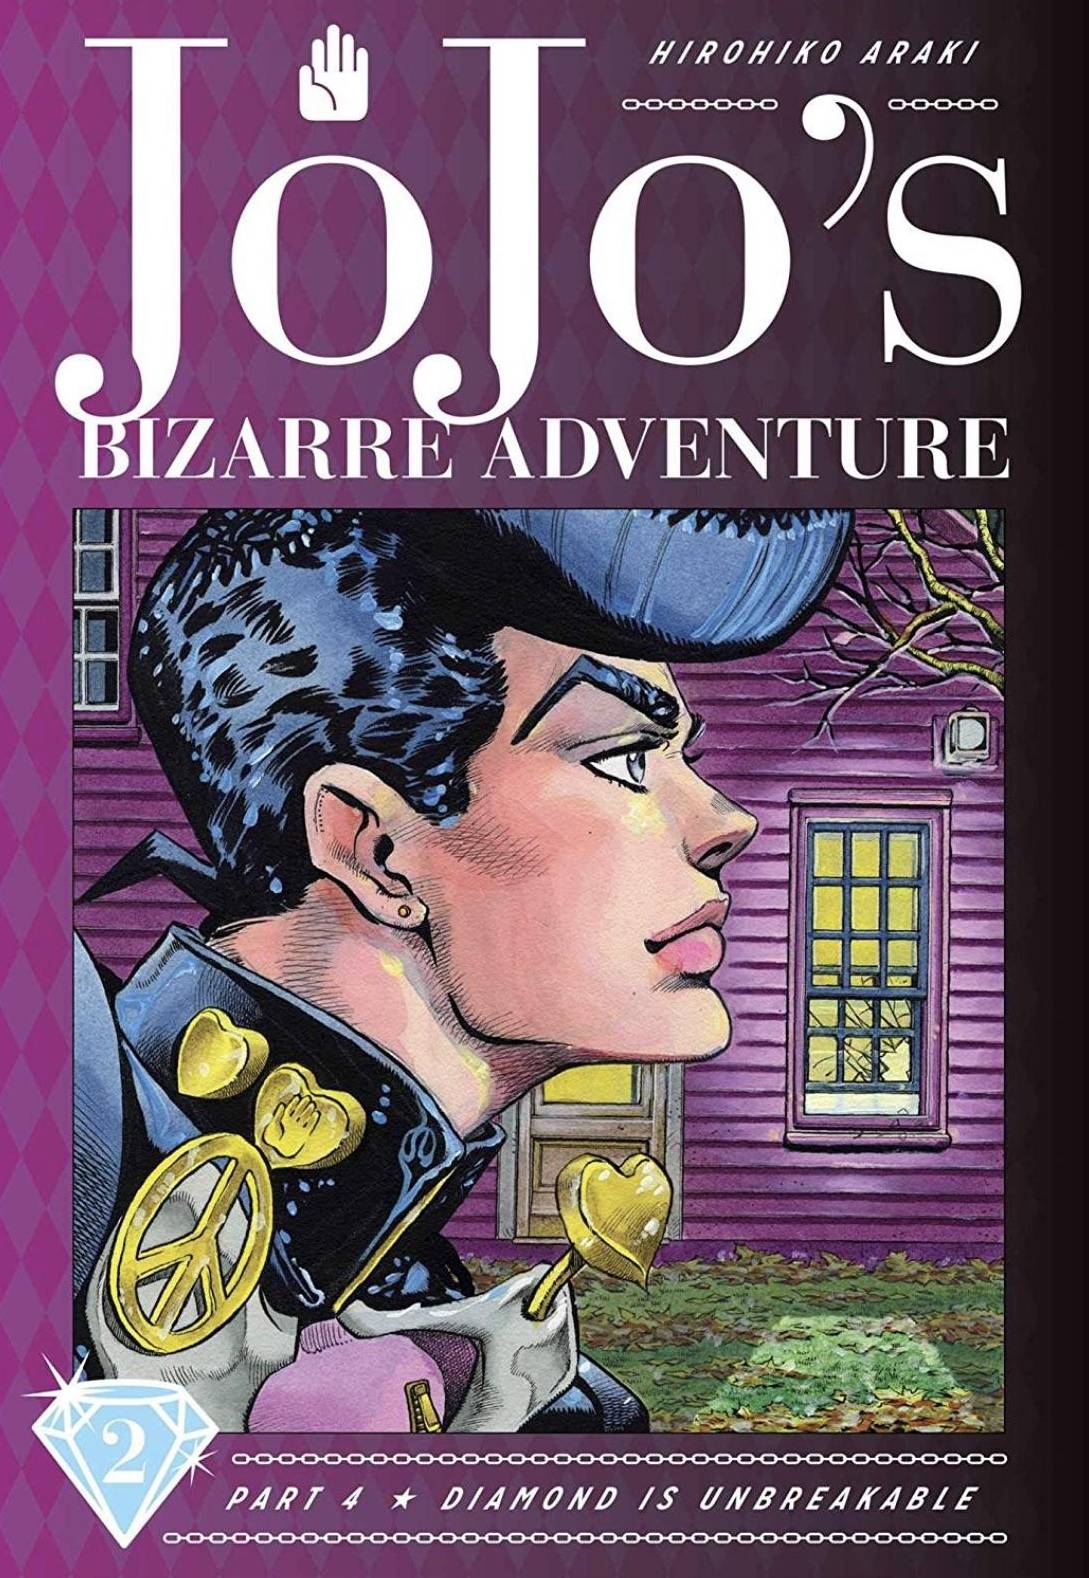 Jojo's Bizarre Adventure Part 4 Diamond Is Unbreakable Vol. 02